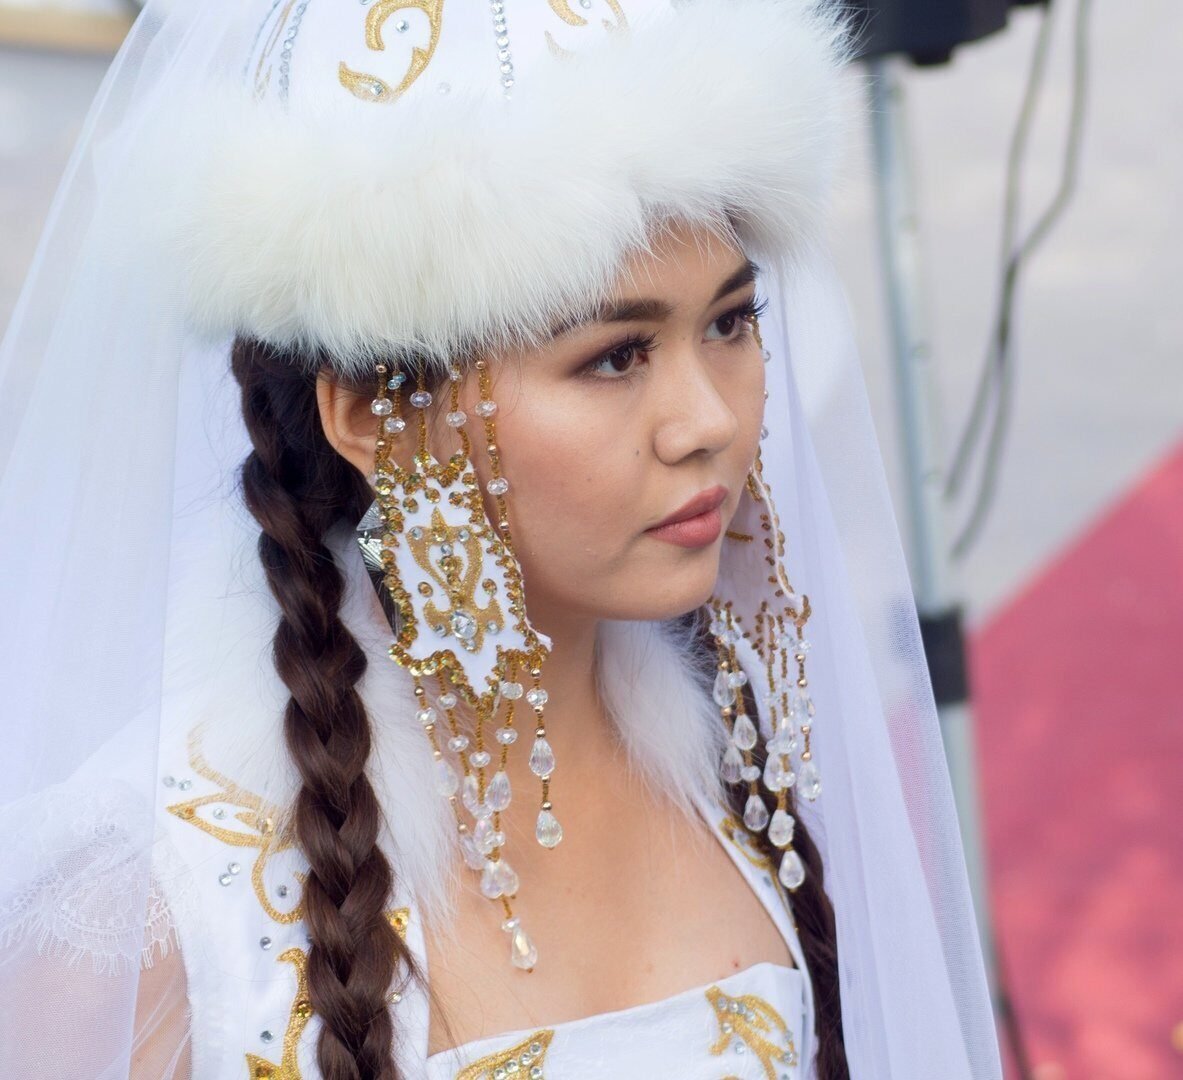 Русские казахский видео. Саукеле. Касаба казахский головной убор. Казахская невеста. Казахские головные уборы для девушек.